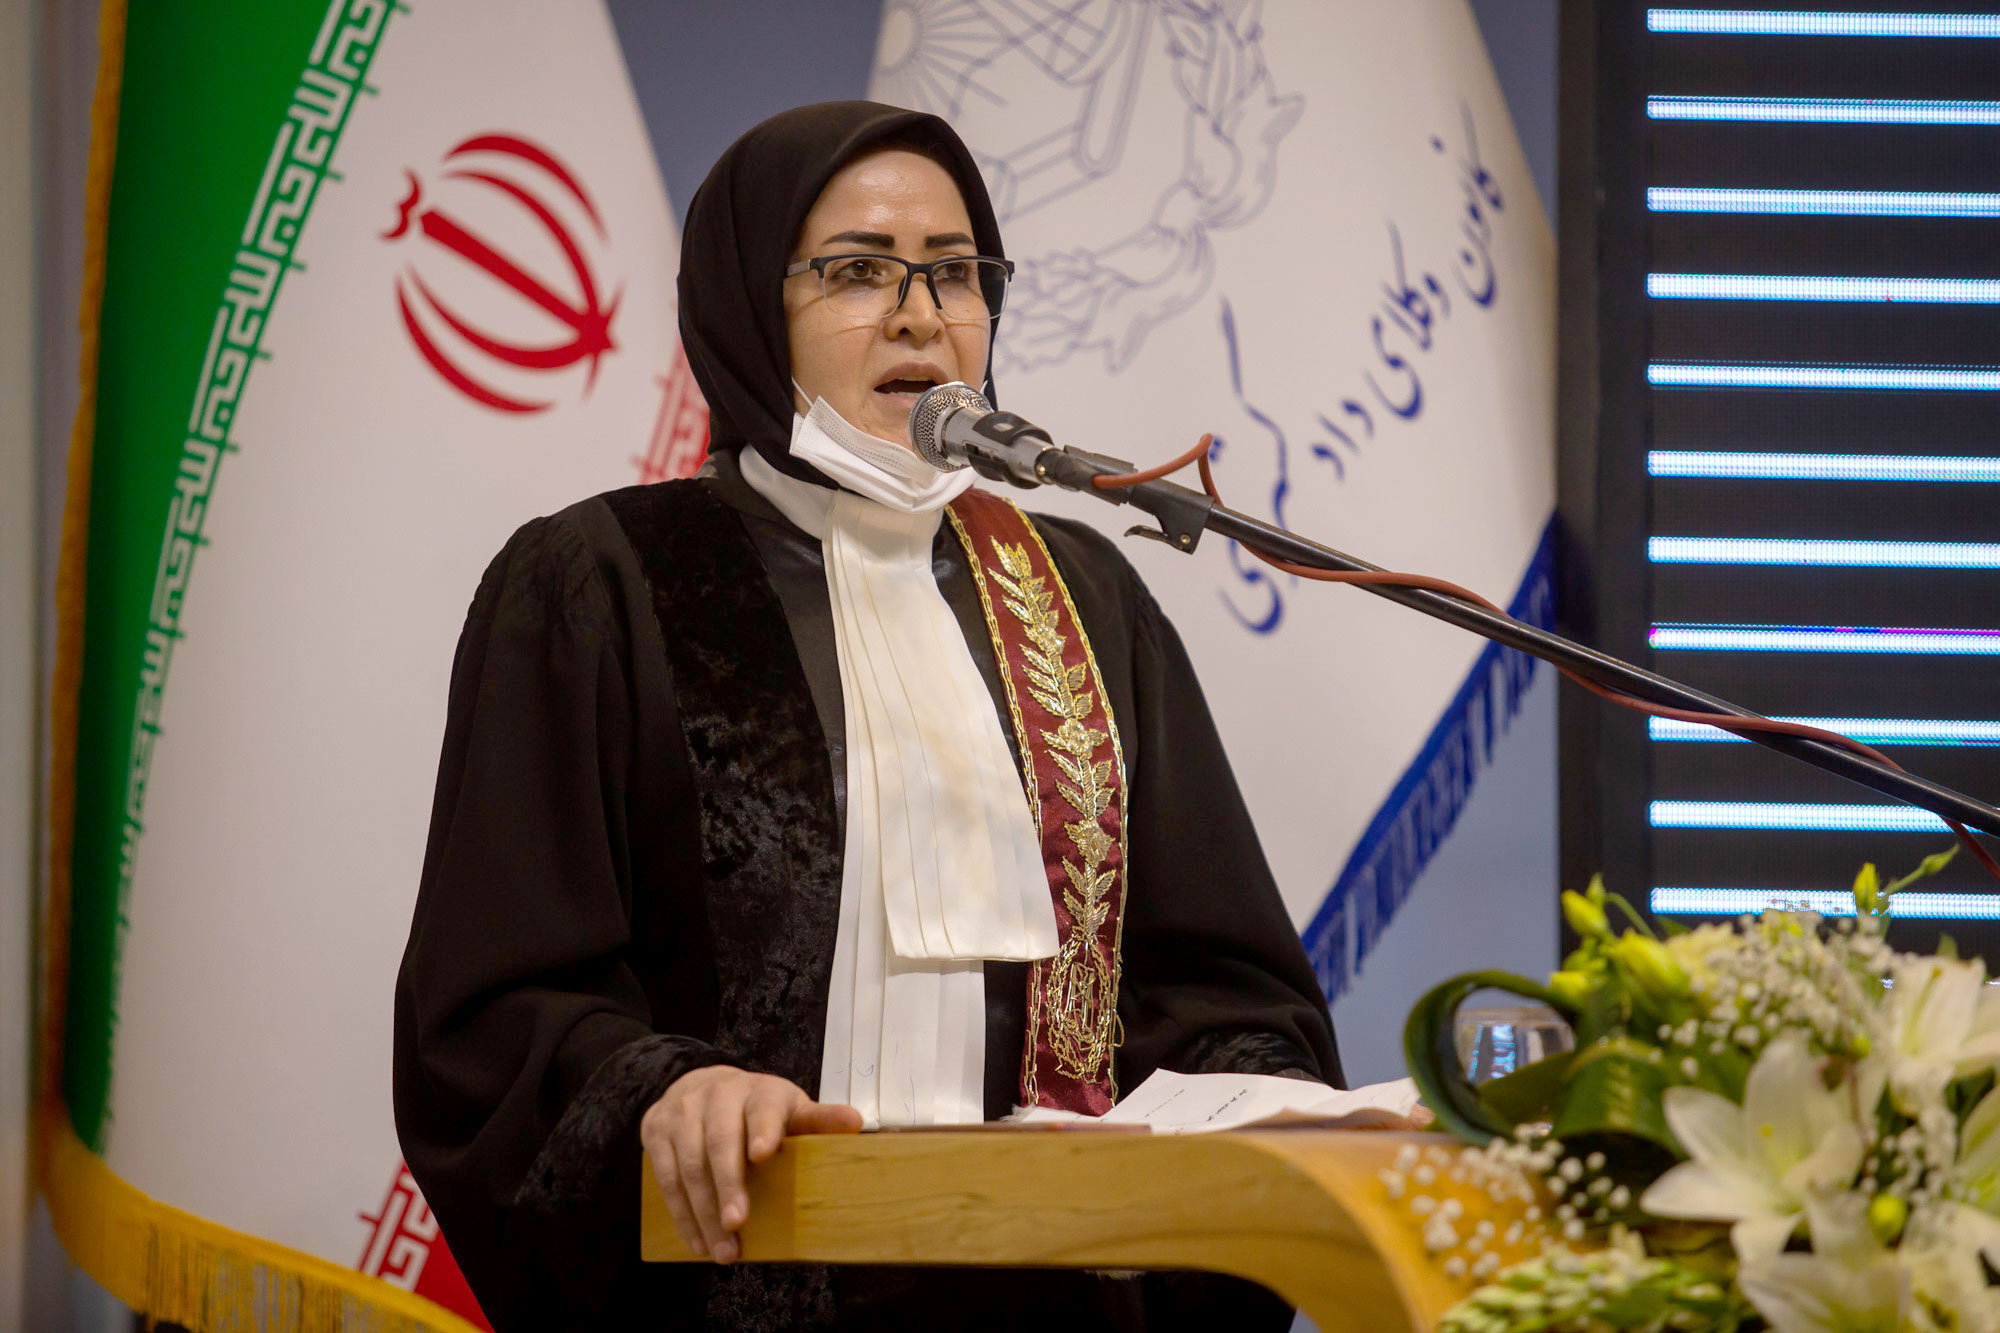 مواضع کانون اصفهان در مورد آزمون ۱۴۰۰ و مسائل و چالشهای پیرامون آن